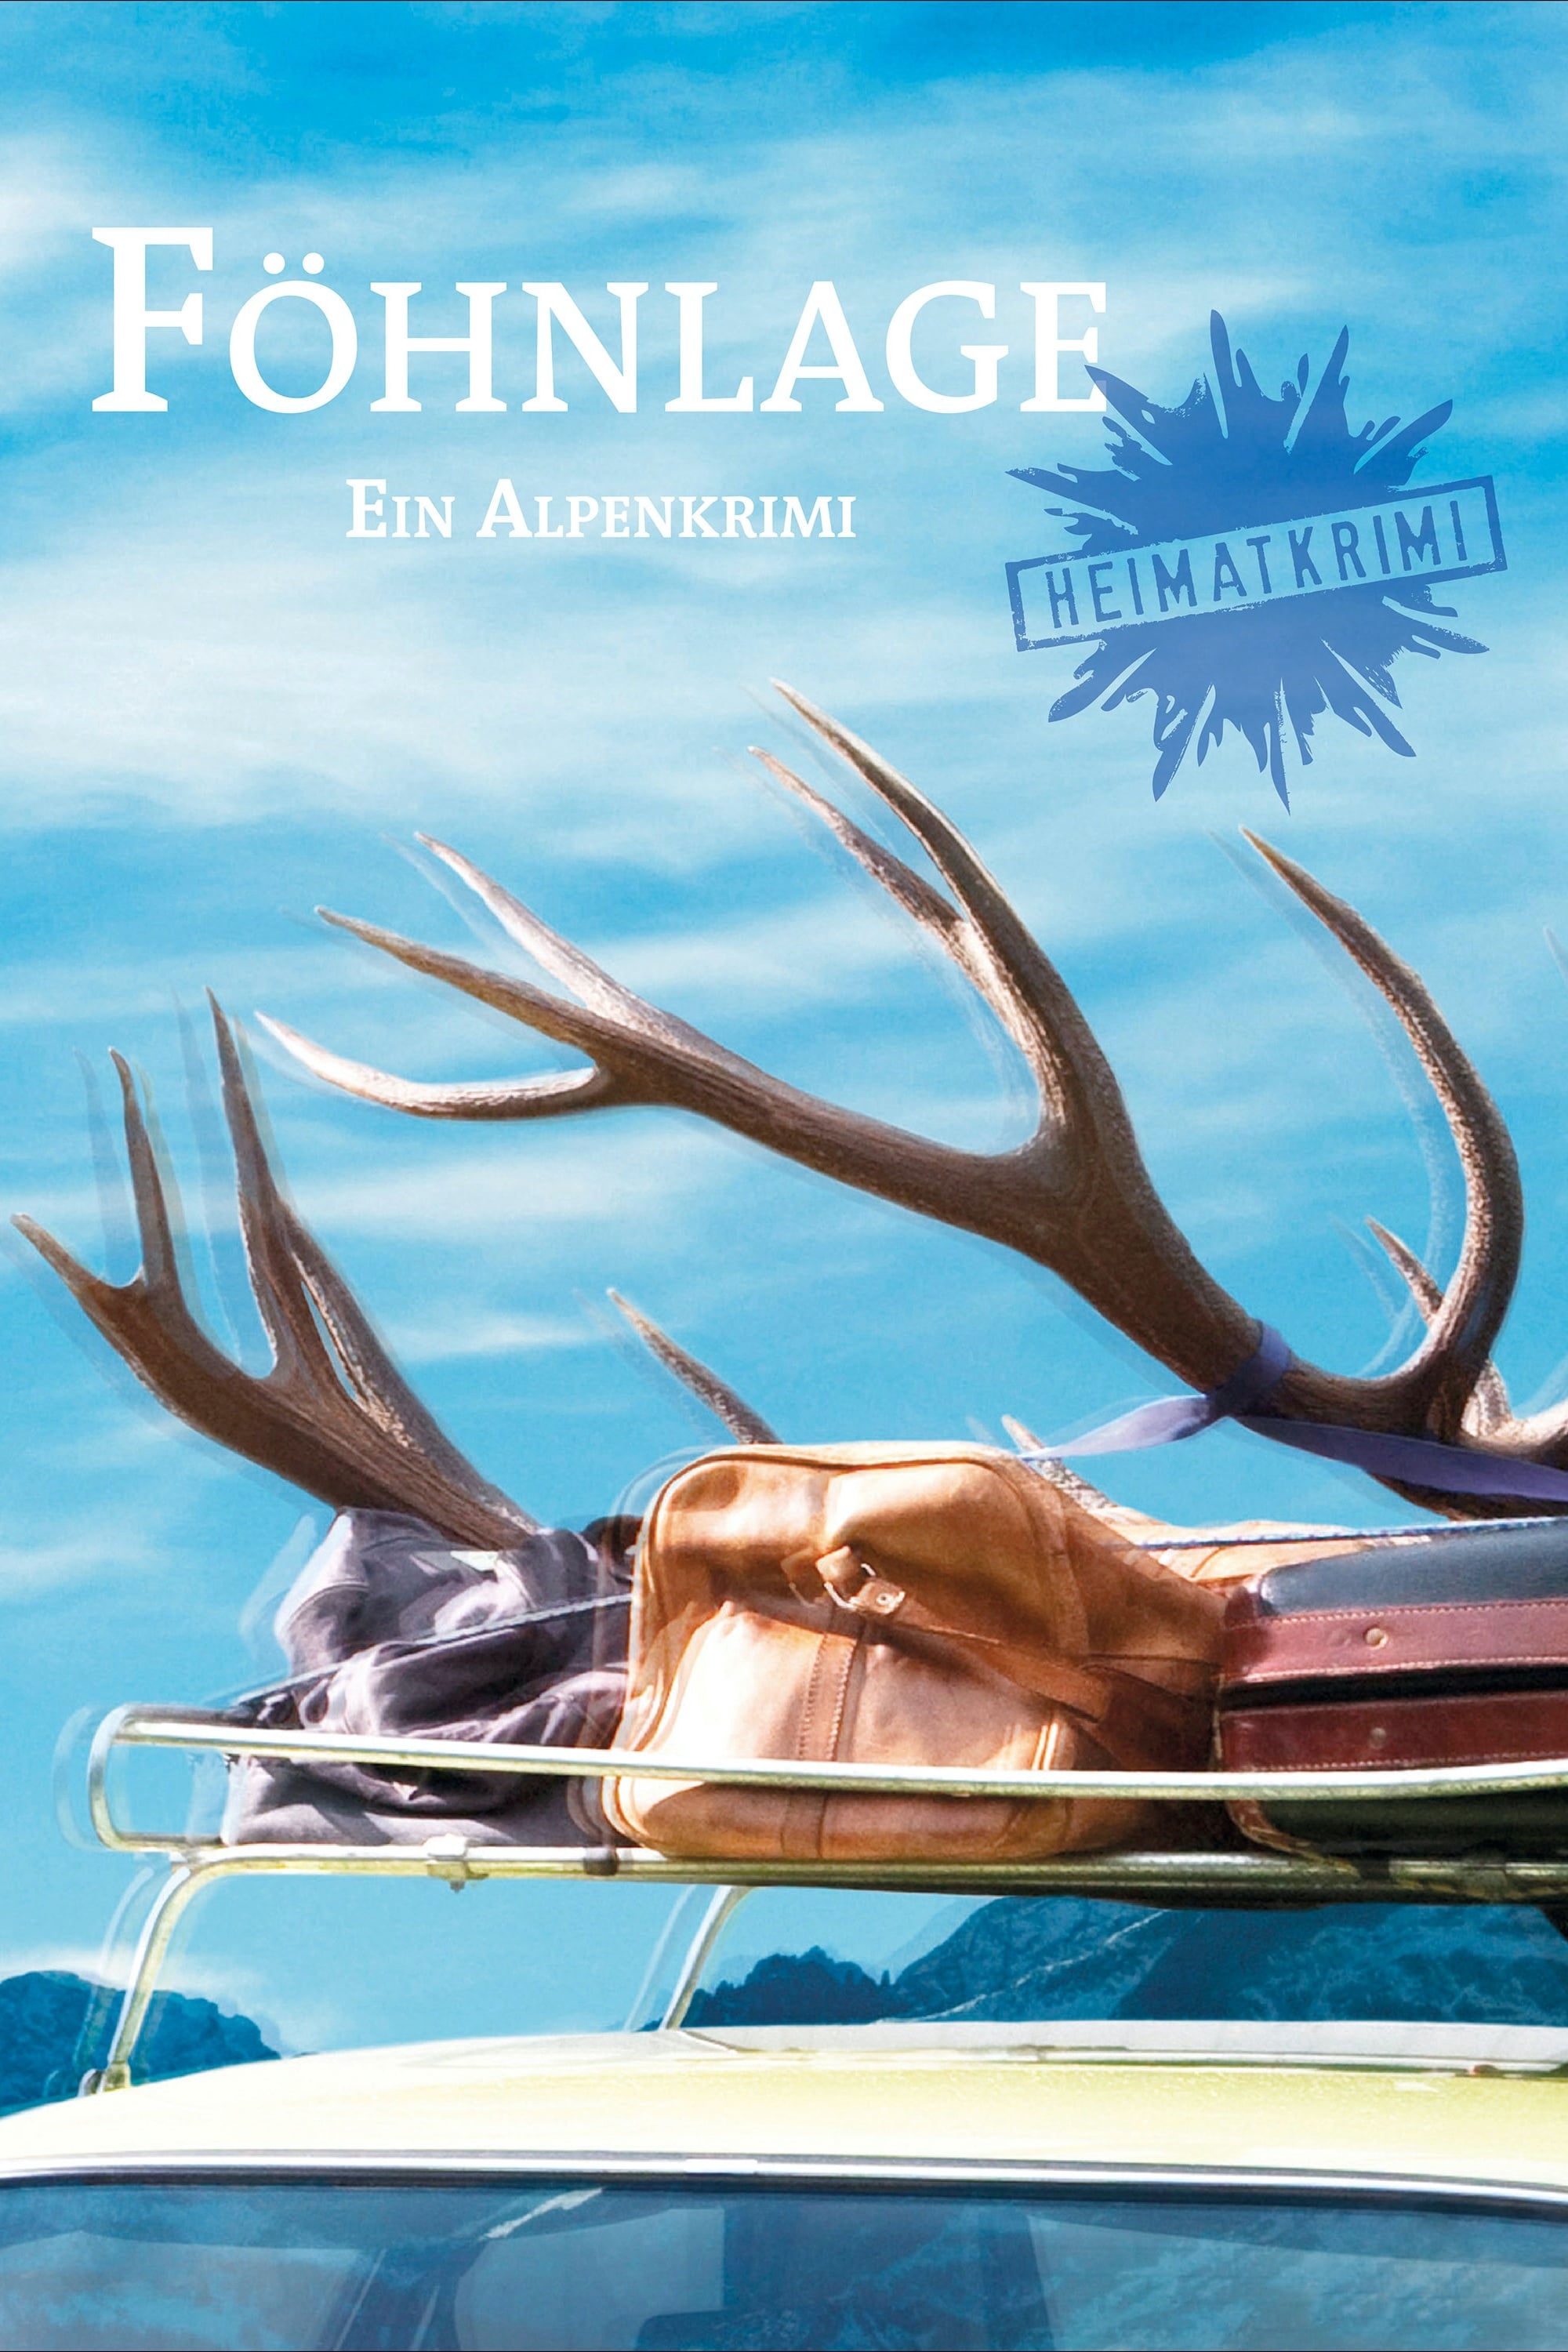 Föhnlage - Ein Alpenkrimi (2011)